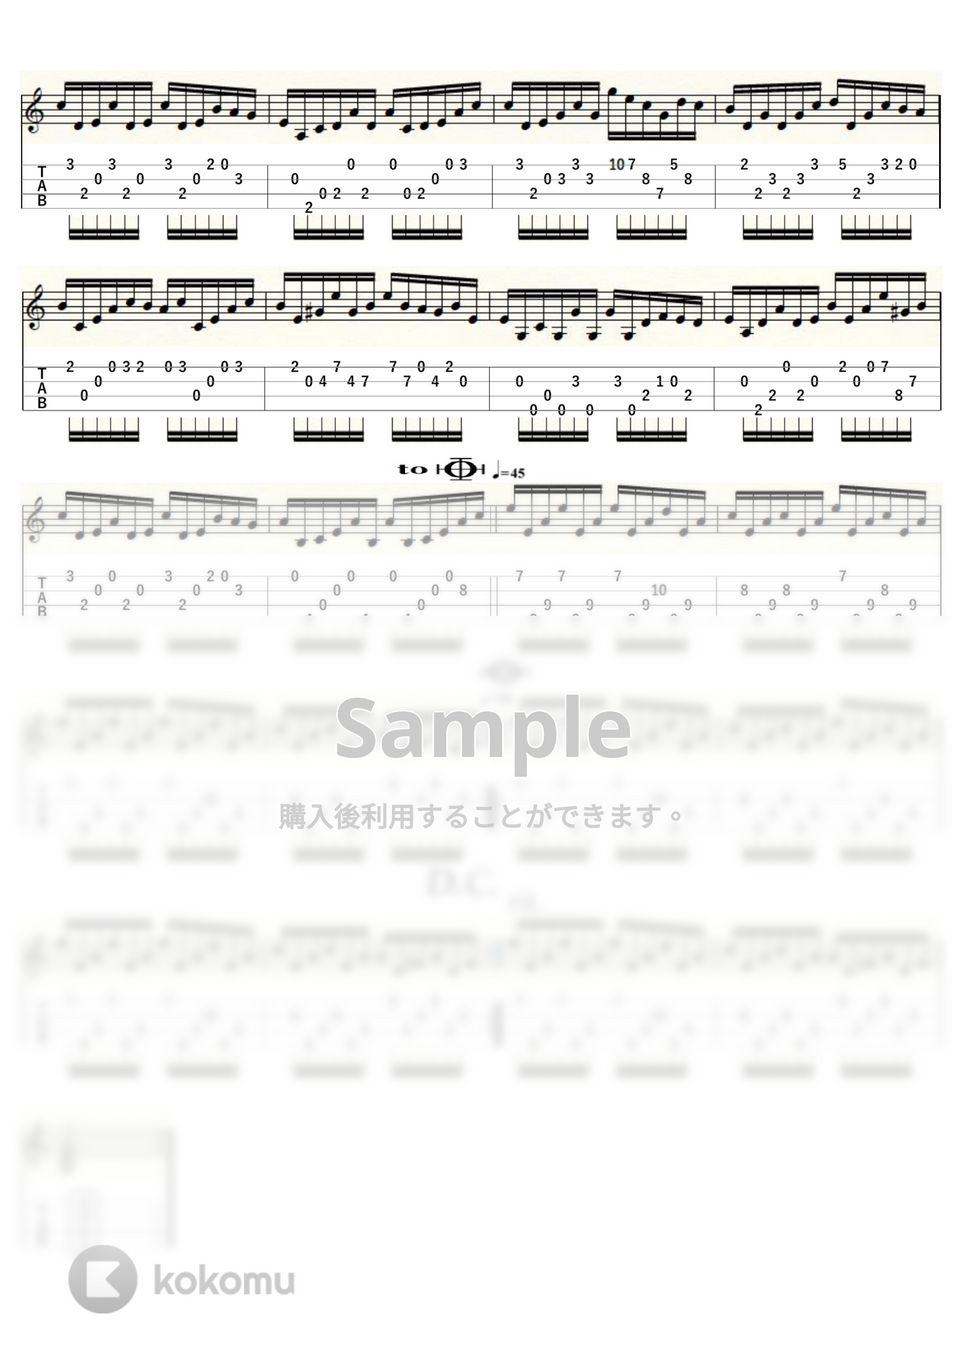 ピアノレッスン - 楽しみを希う心 (ｳｸﾚﾚｿﾛ / Low-G / 中級～上級) by ukulelepapa